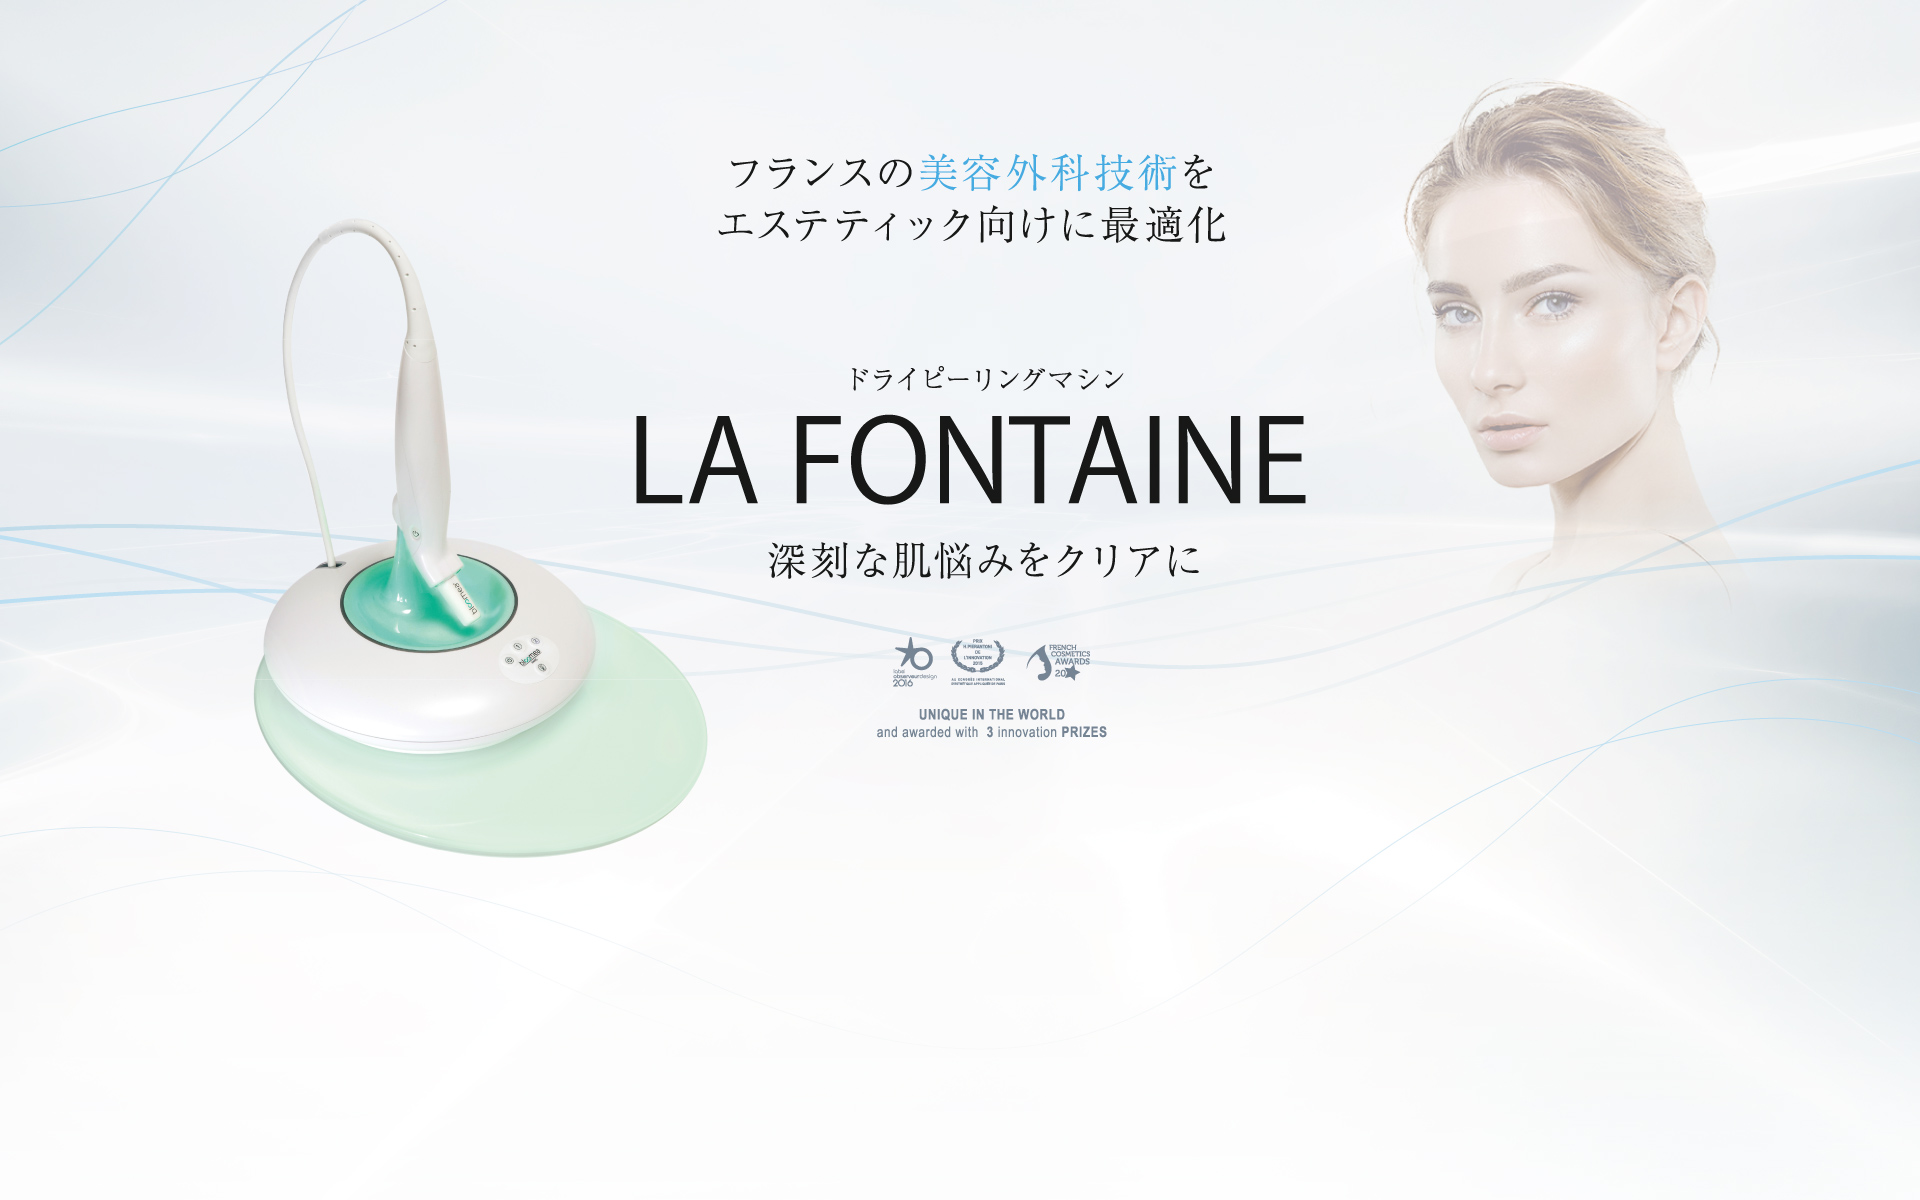 フランスの美容外科技術をエステティック向けに最適化 ドライピーリングマシン LA FONTAINE 深刻な肌悩みをクリアに